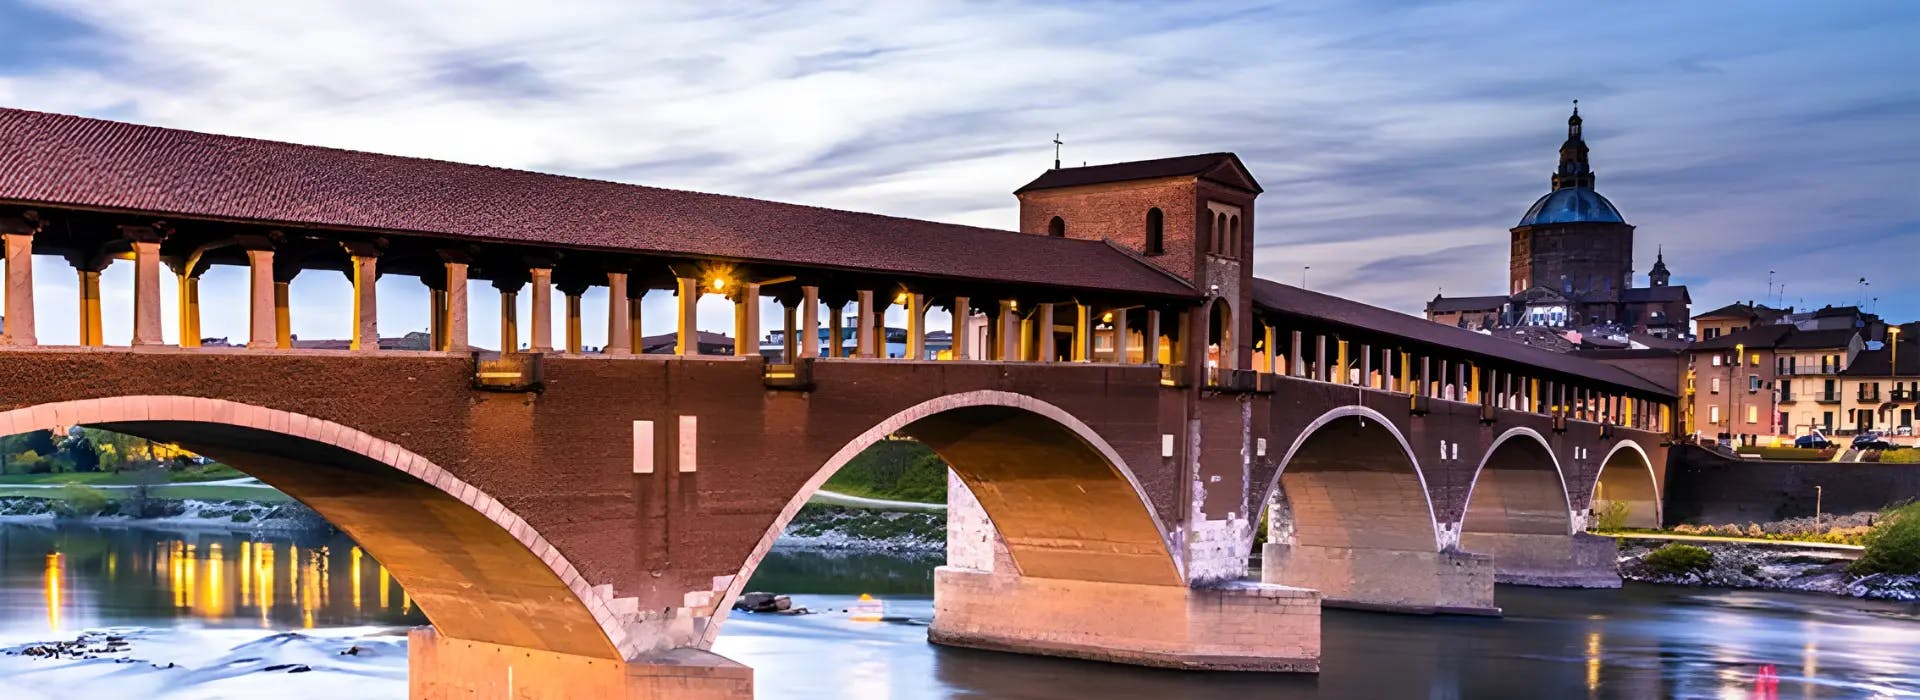 Una vista panoramica del centro storico di Pavia